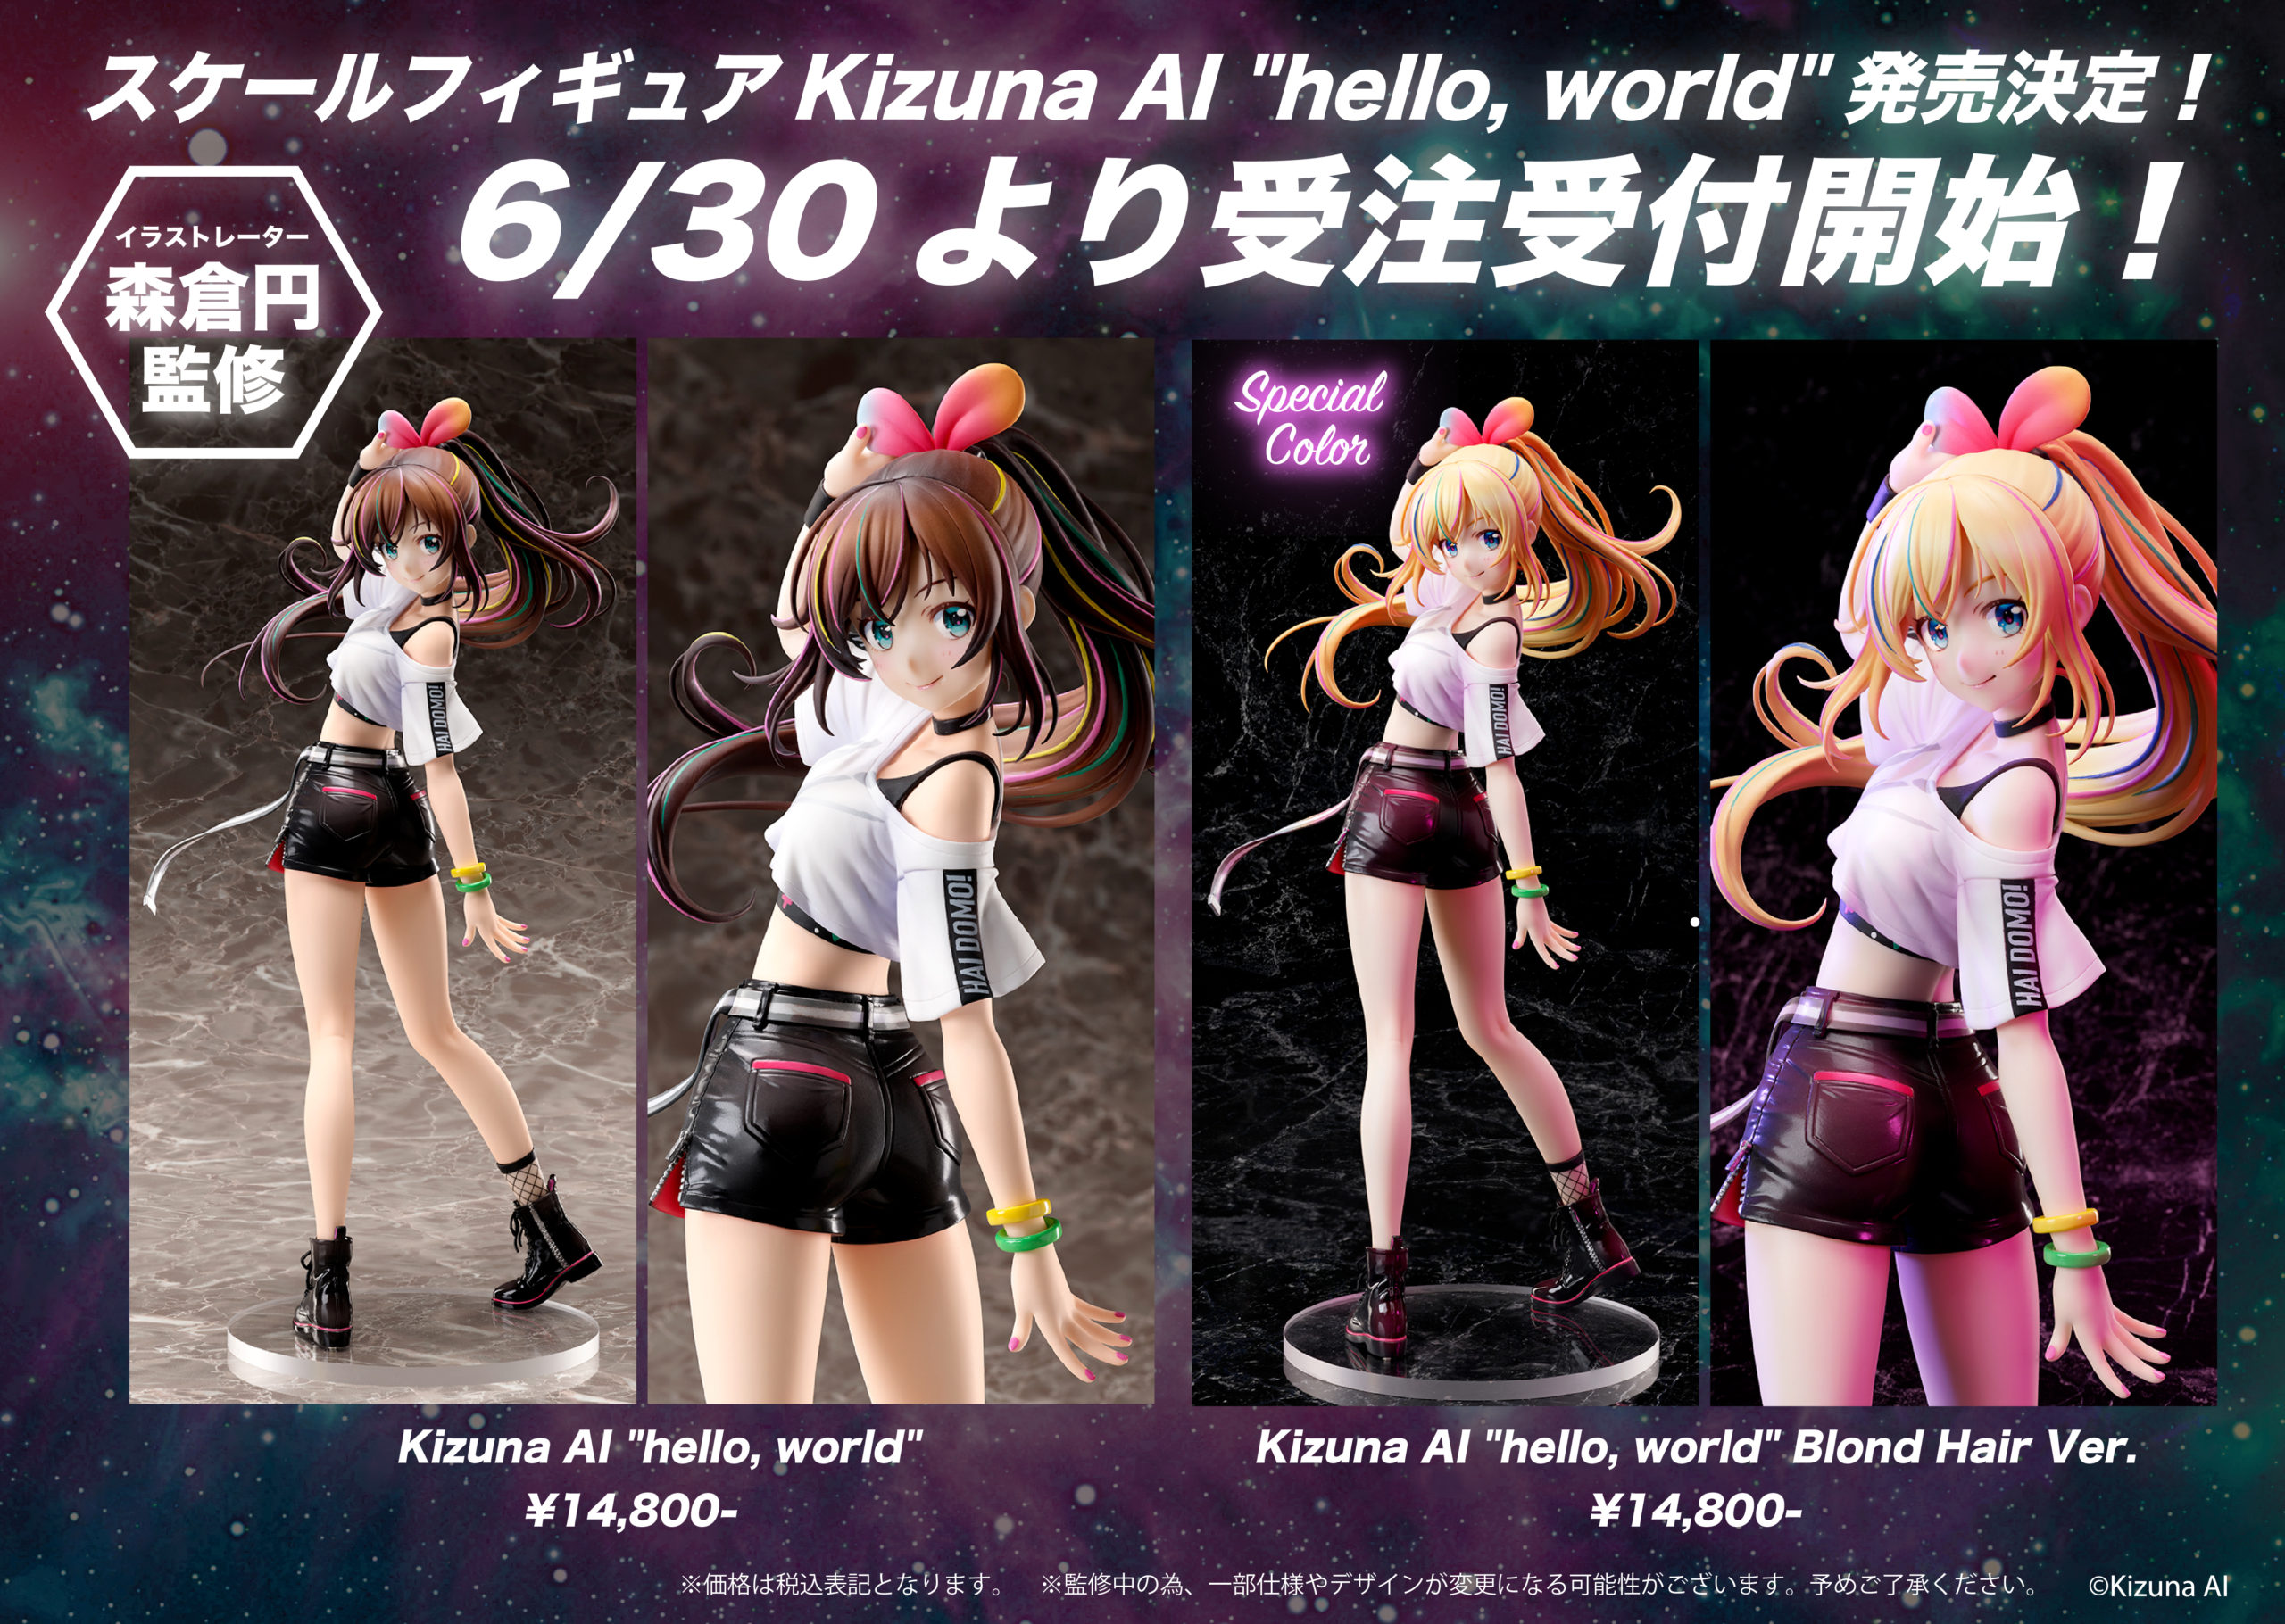 新フィギュア「Kizuna AI “hello, world”」受注受付開始 | Kizuna AI